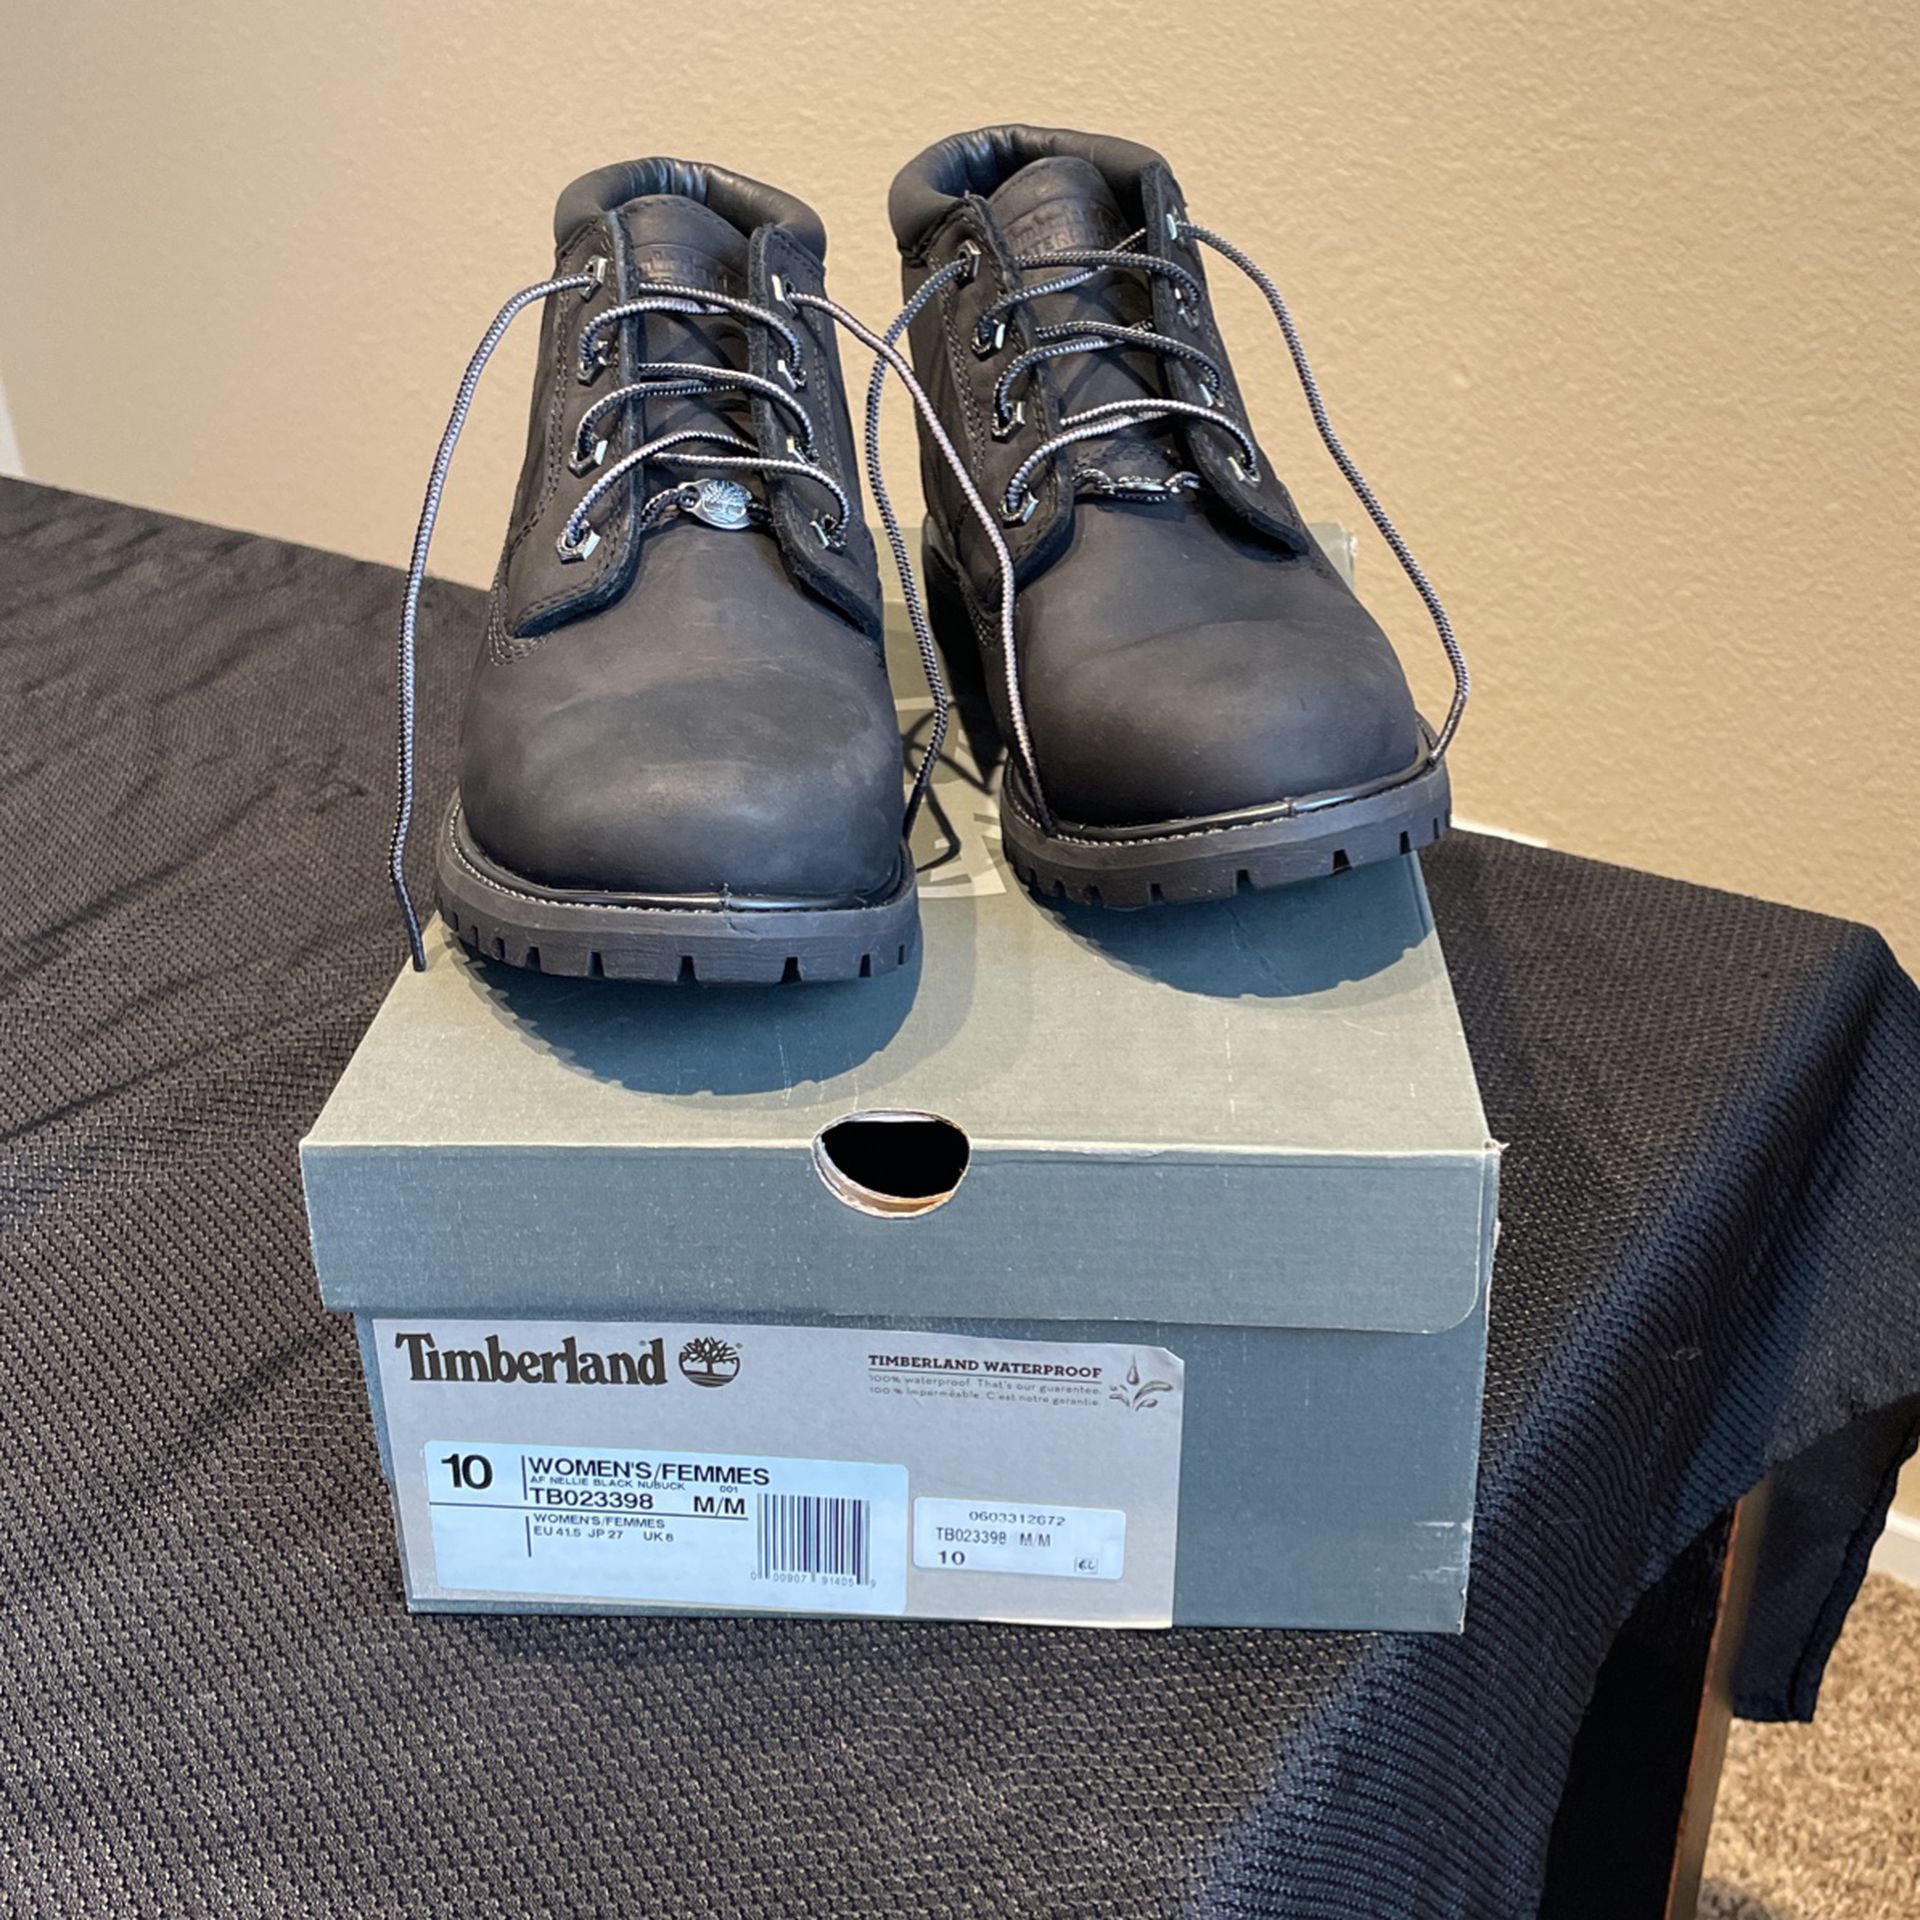 Timberland Waterproof Boots Size 10 Women